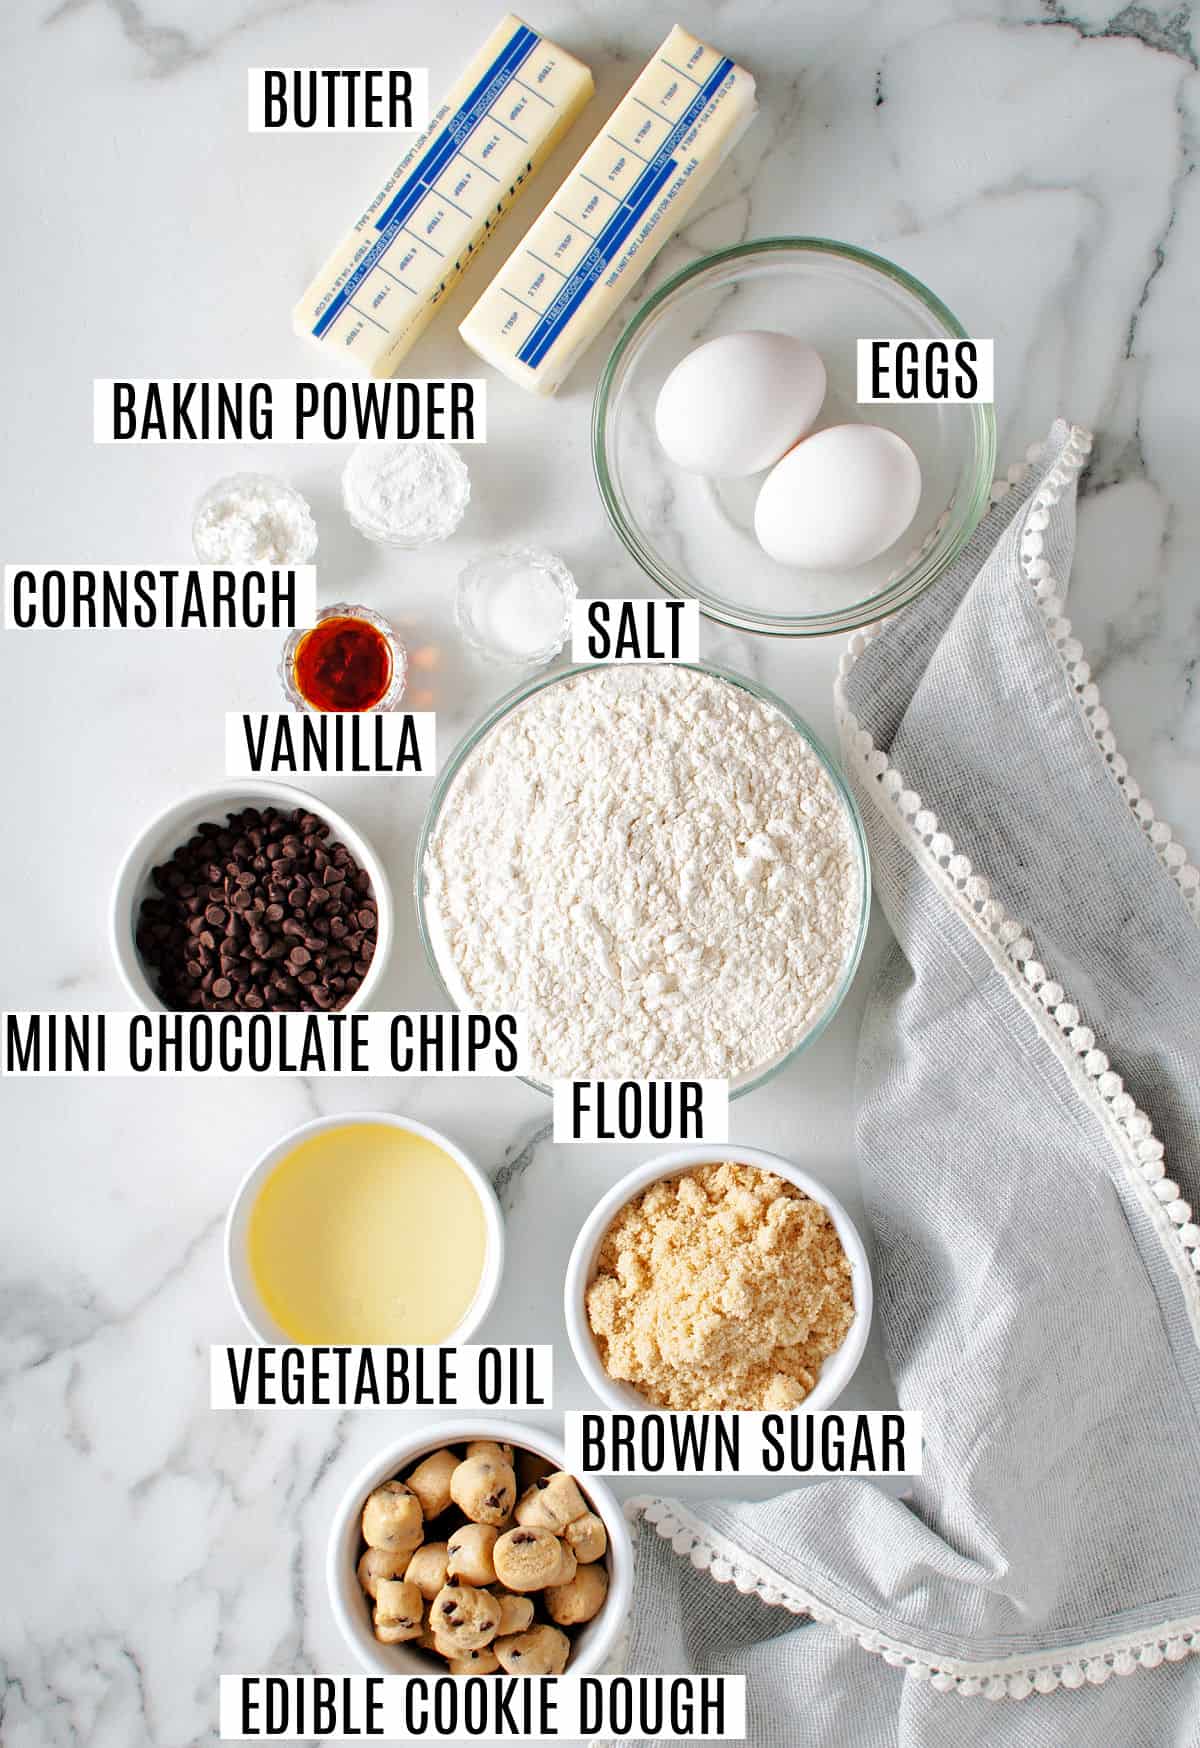 Ingredienti necessari per fare i biscotti di pasta frolla.